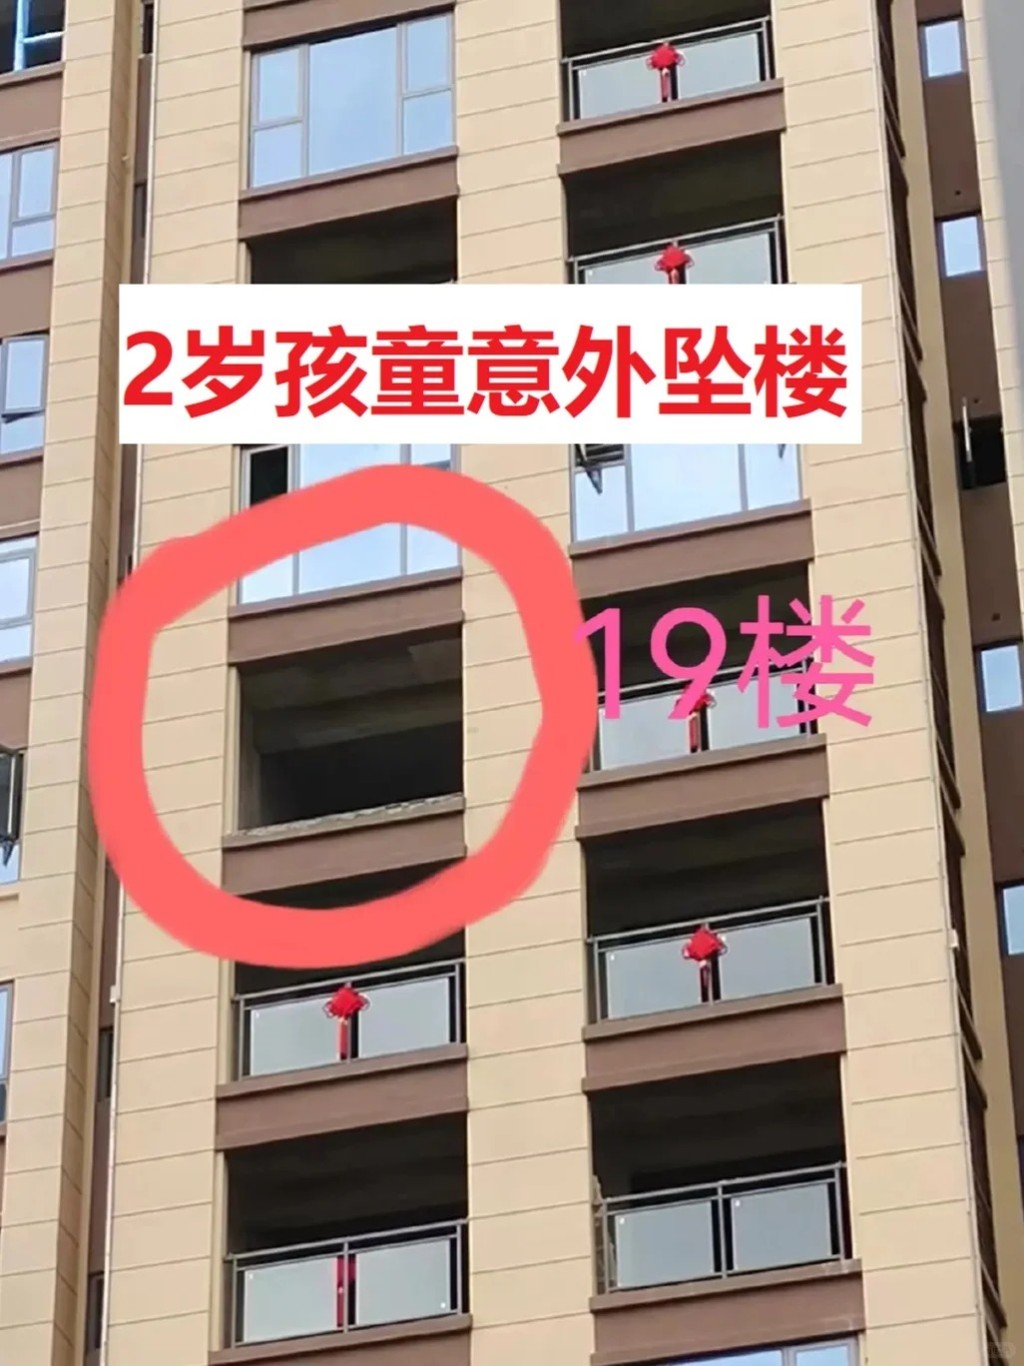 四川有2歲小童在新樓的露台墜下身亡。